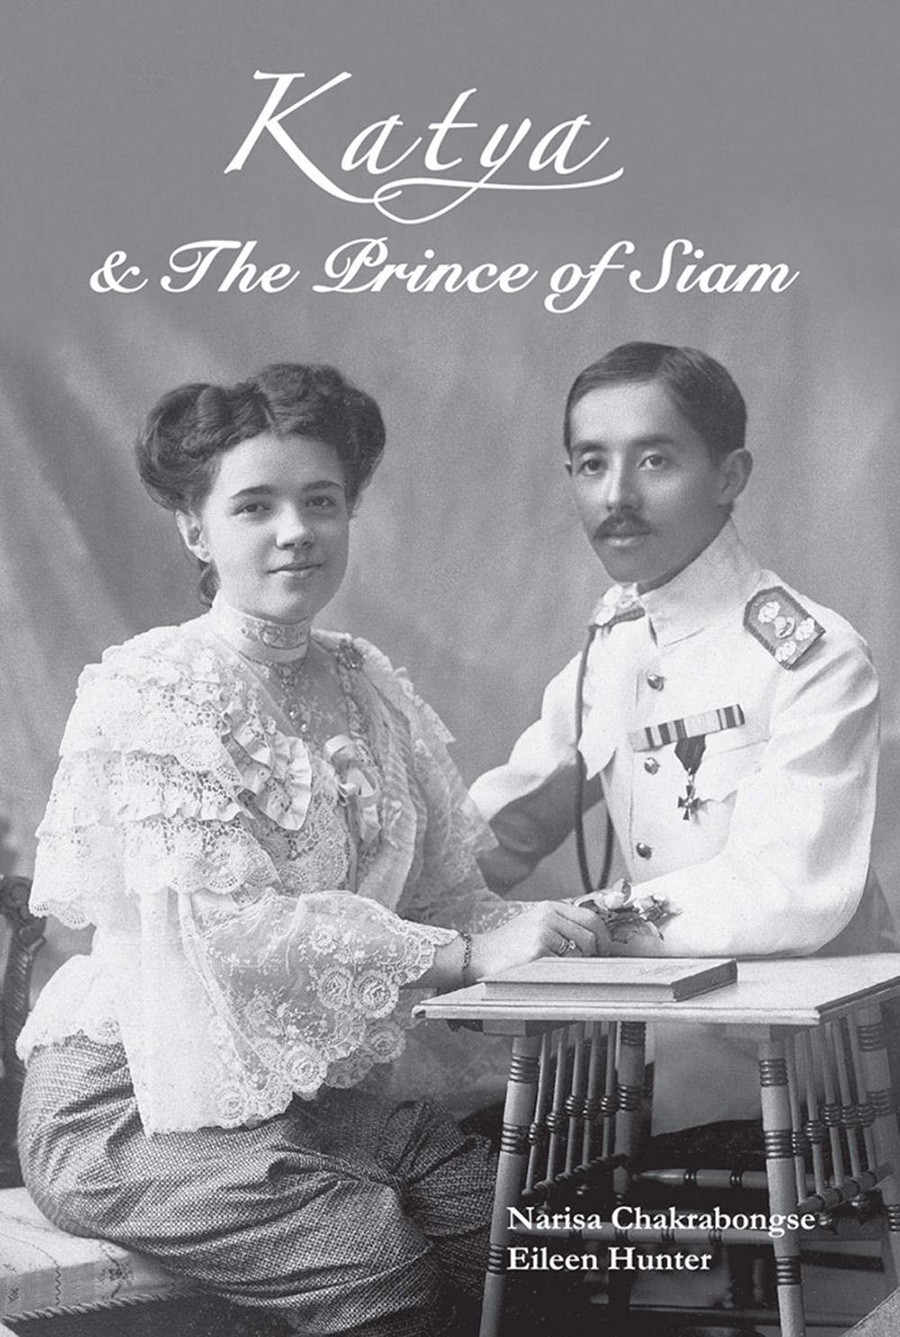 Ein Einband für das Buch „Katja und der Prinz von Siam“ von Narisa Chakrabongse und Eileen Hunter.